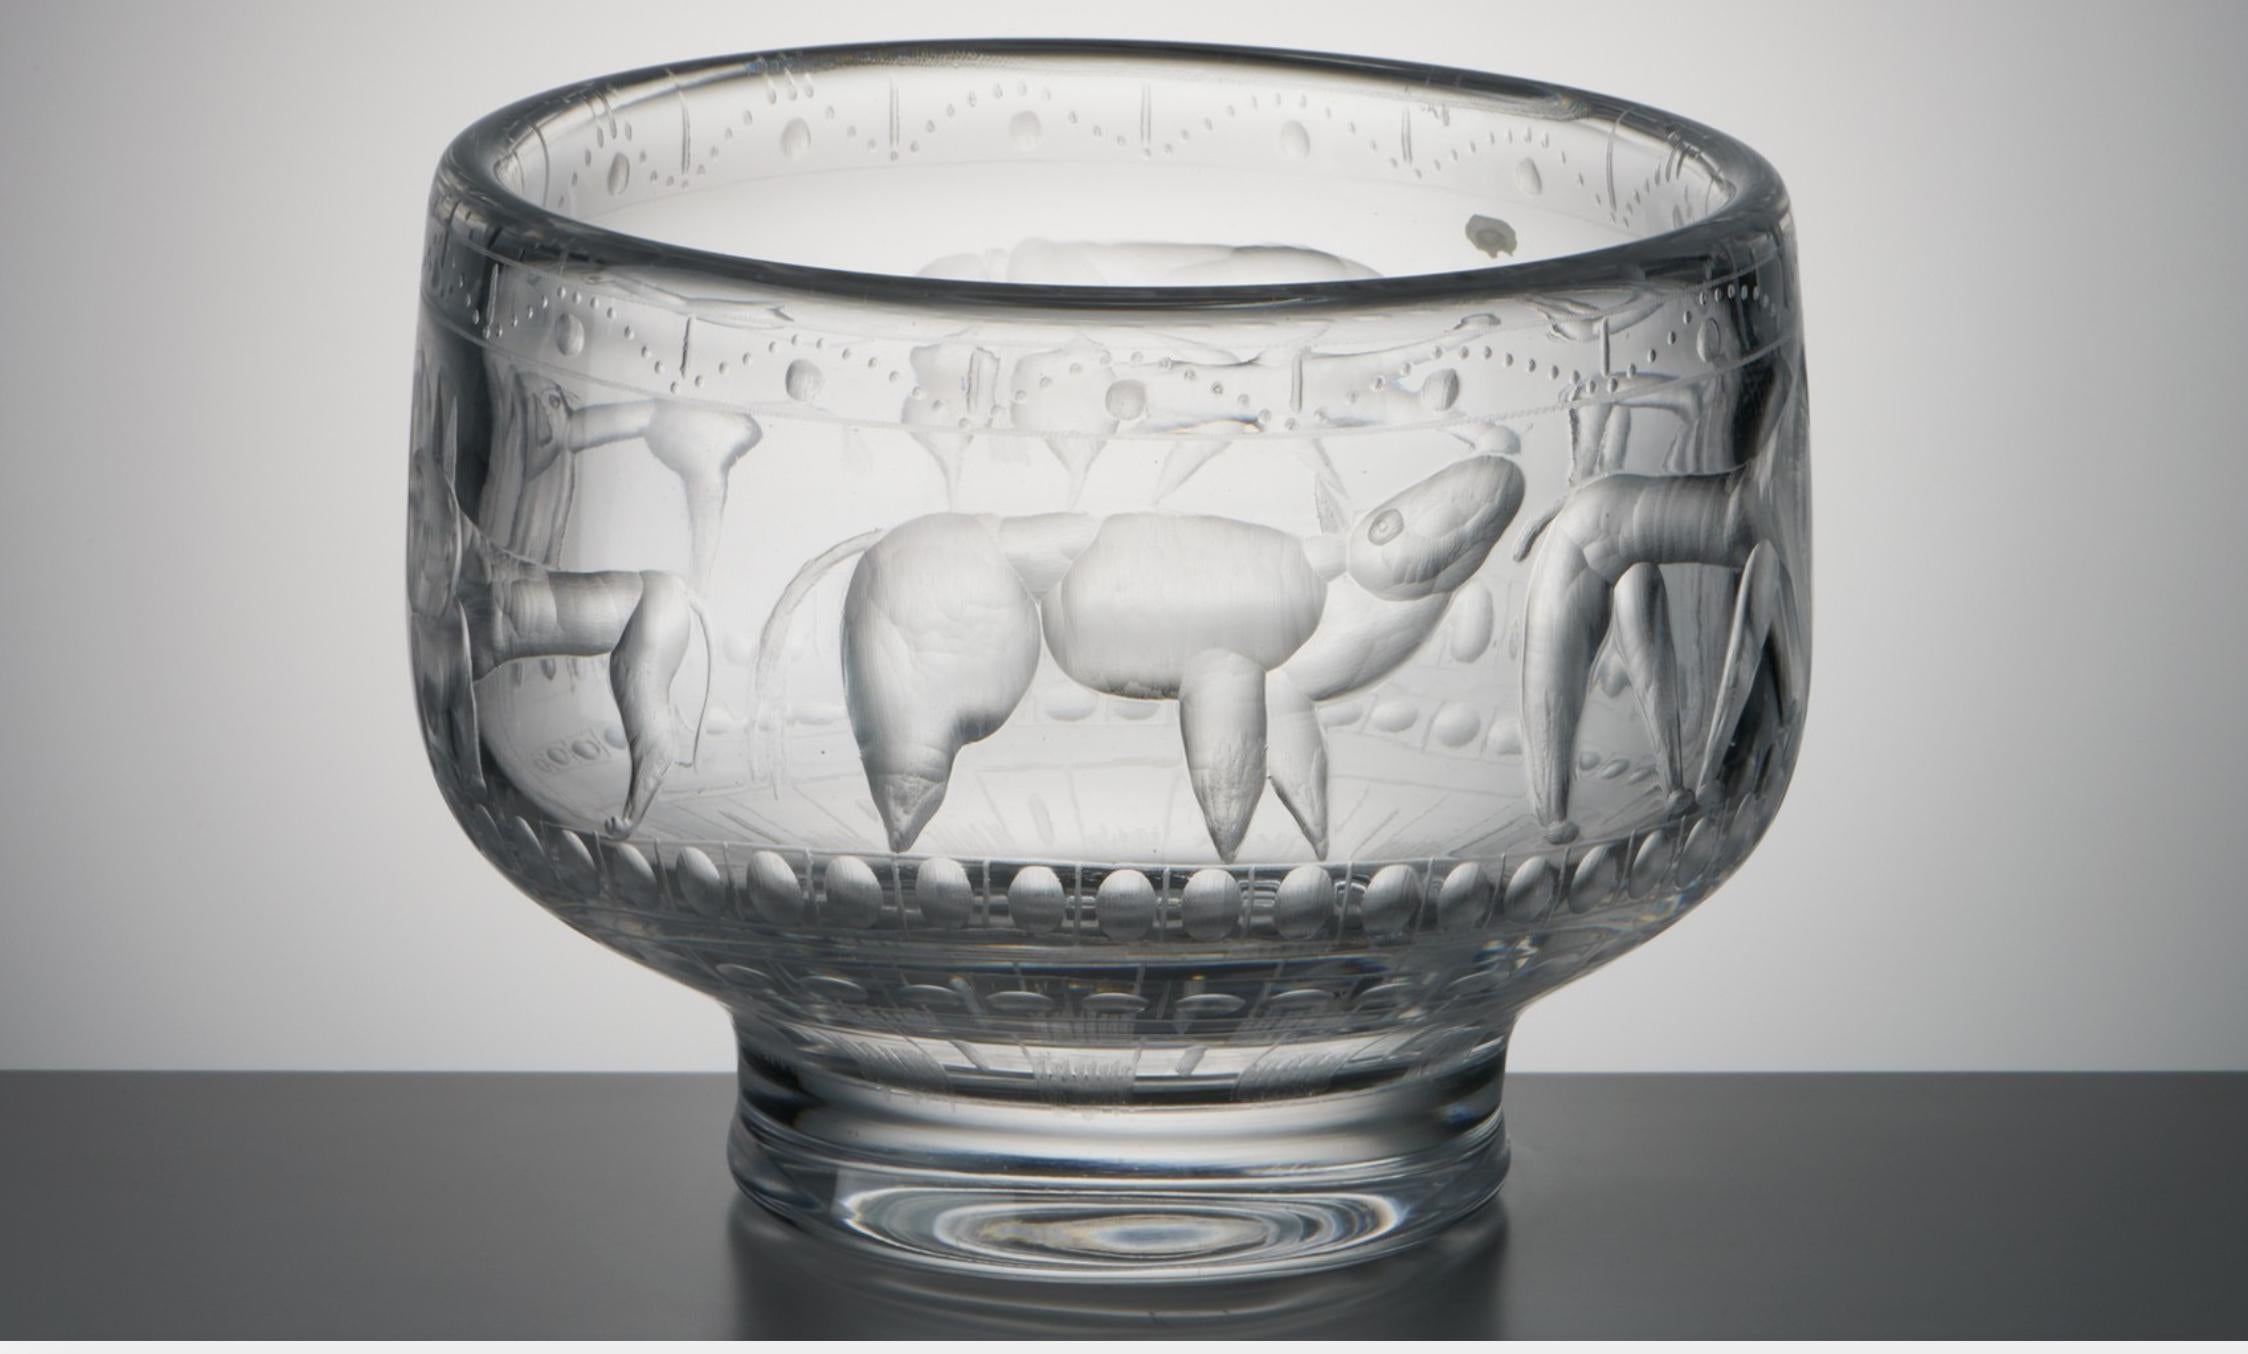 Rarement vu, le bol en verre du surréaliste/expressionniste Erik Hoglund représente des chiens bestiaux dont la musculature et la dimensionnalité sont exagérées. Gravure au diamant 